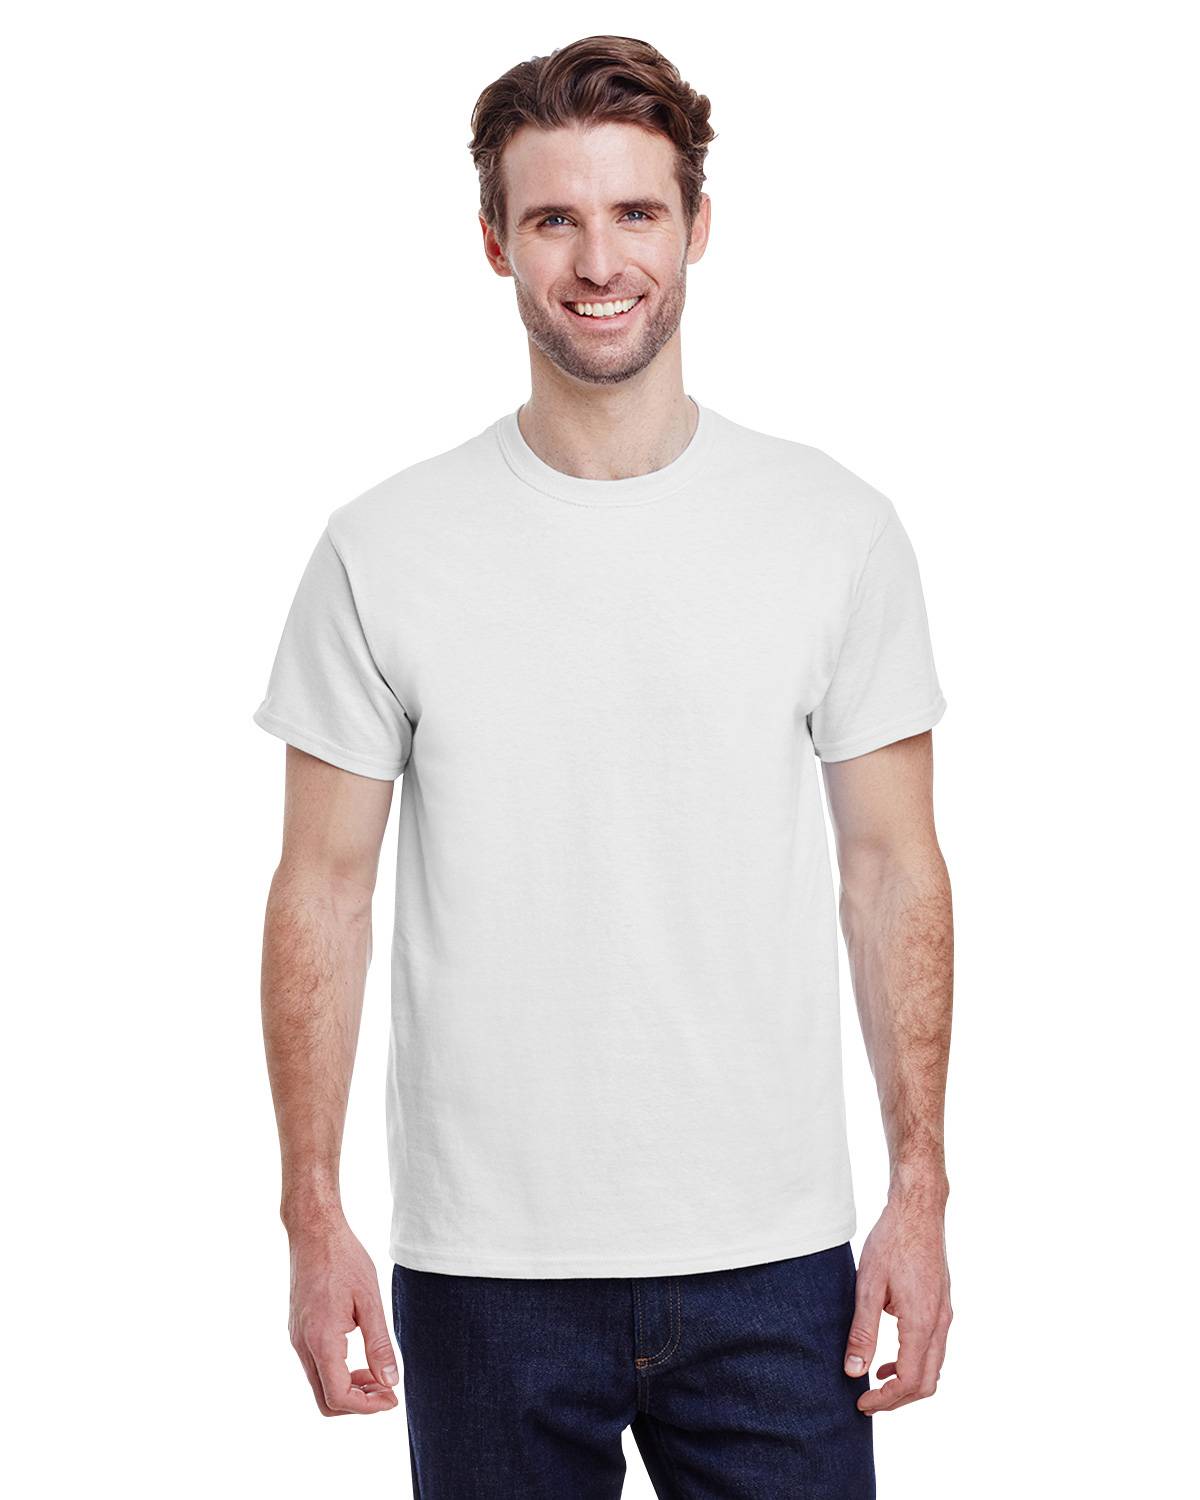 40 NEW MENS Wholesale Plain Gildan 100% Cotton White Adult T-Shirts S M L XL 